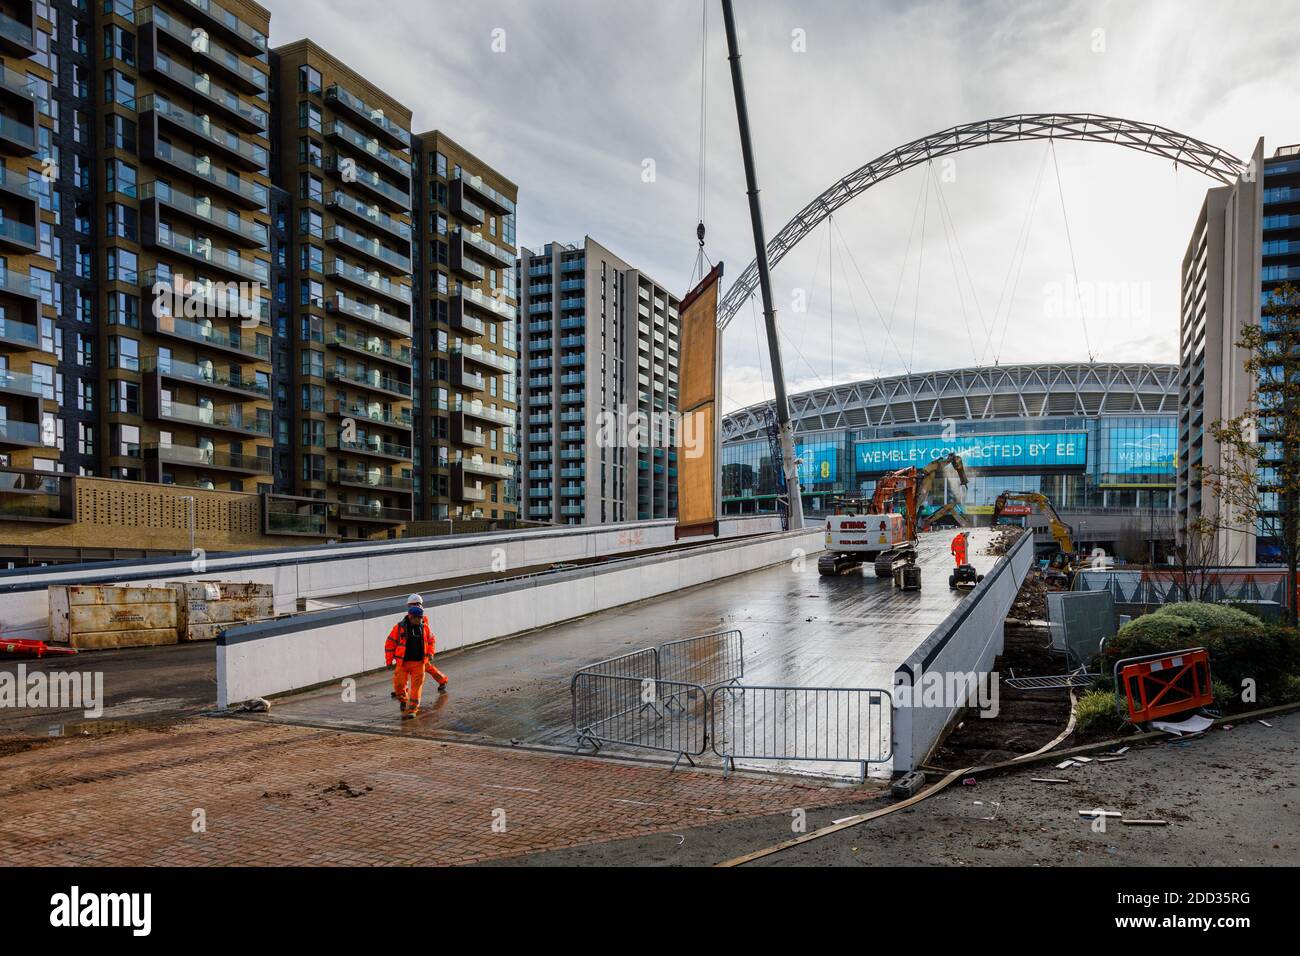 La démolition de « Wembley Way », l'emblématique sentier de randonnée de Wembley Stadium, une passerelle piétonne à deux rampes vieille de 46 ans, se poursuit. Banque D'Images